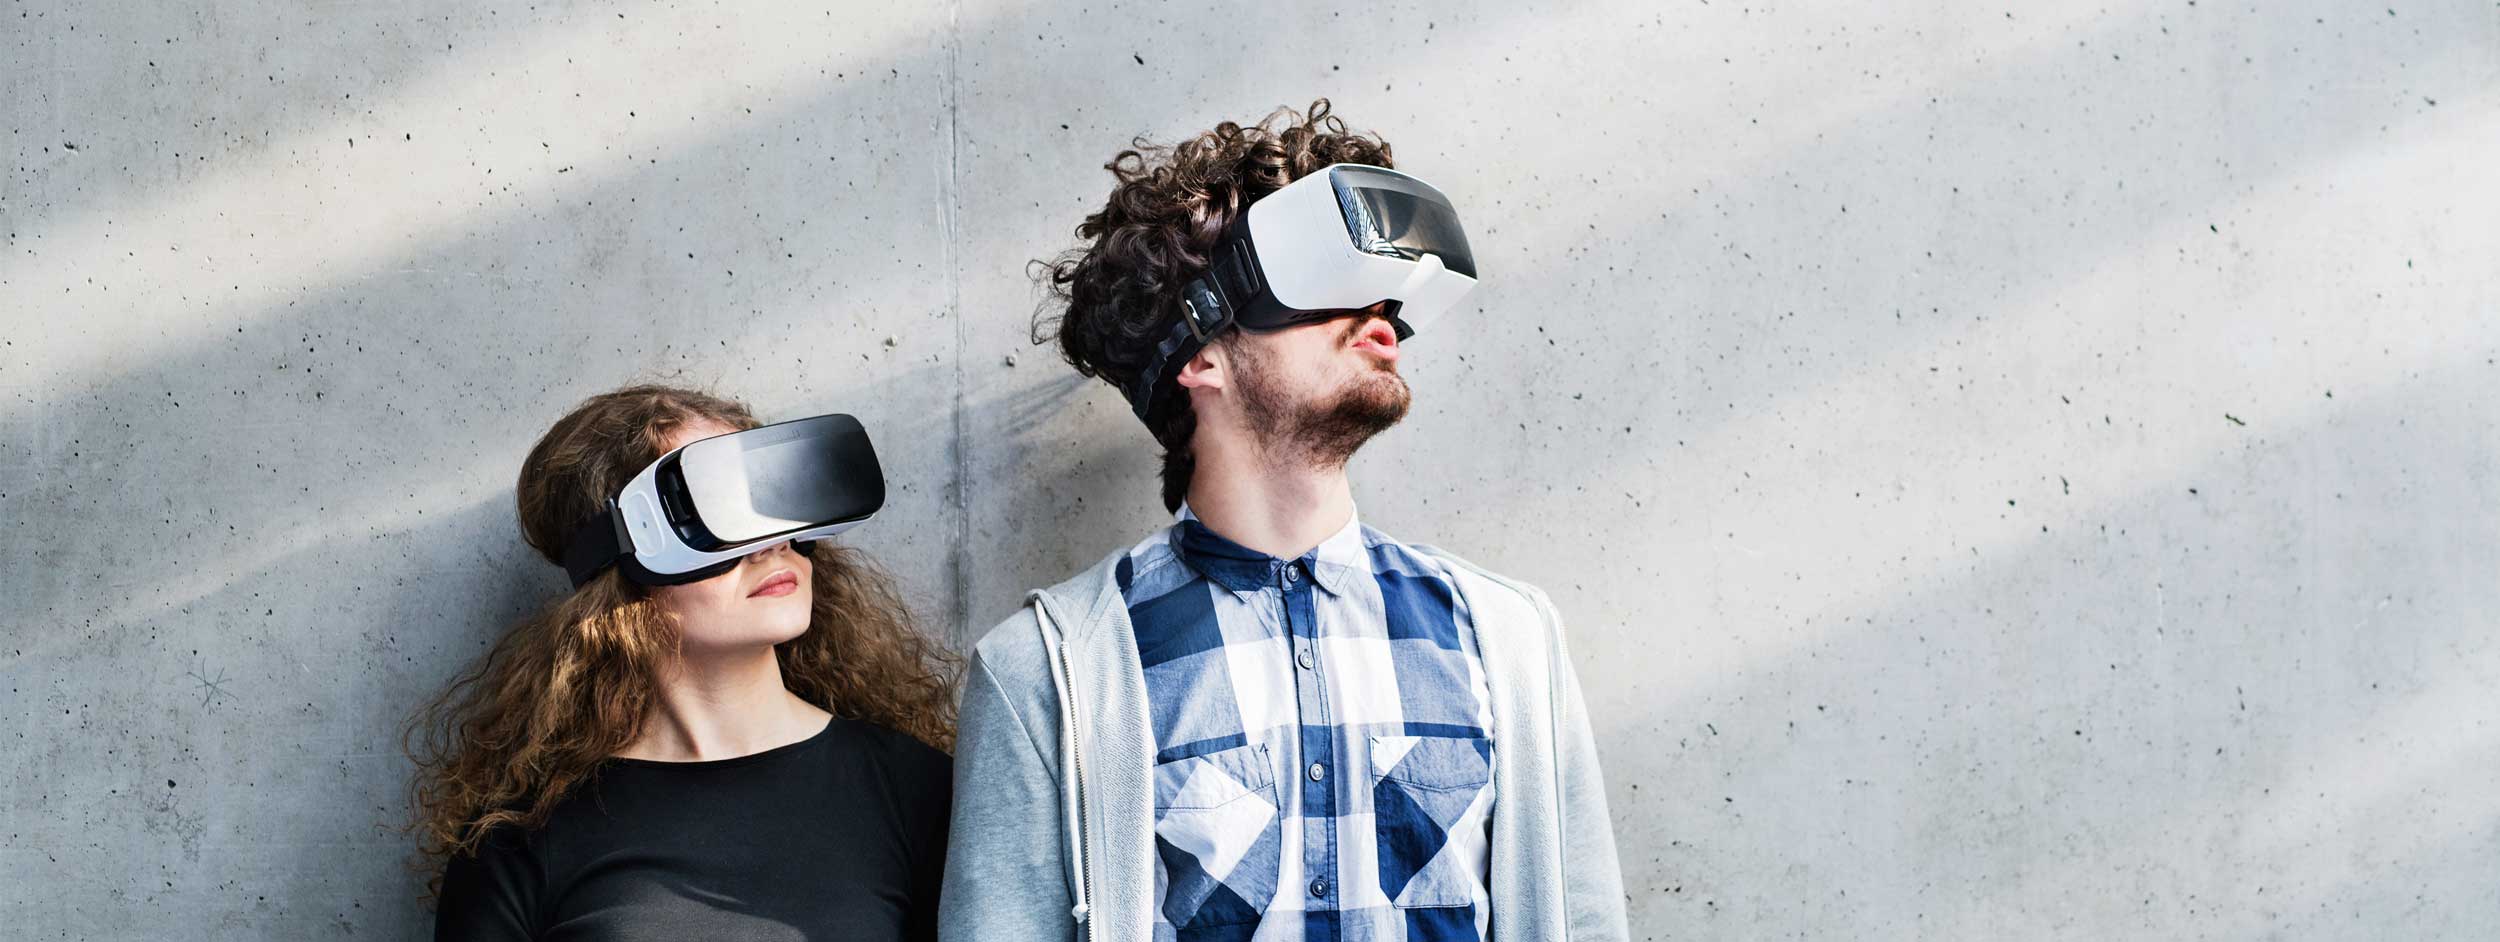 studenten met VR bril oriënteren zich op studiekeuze